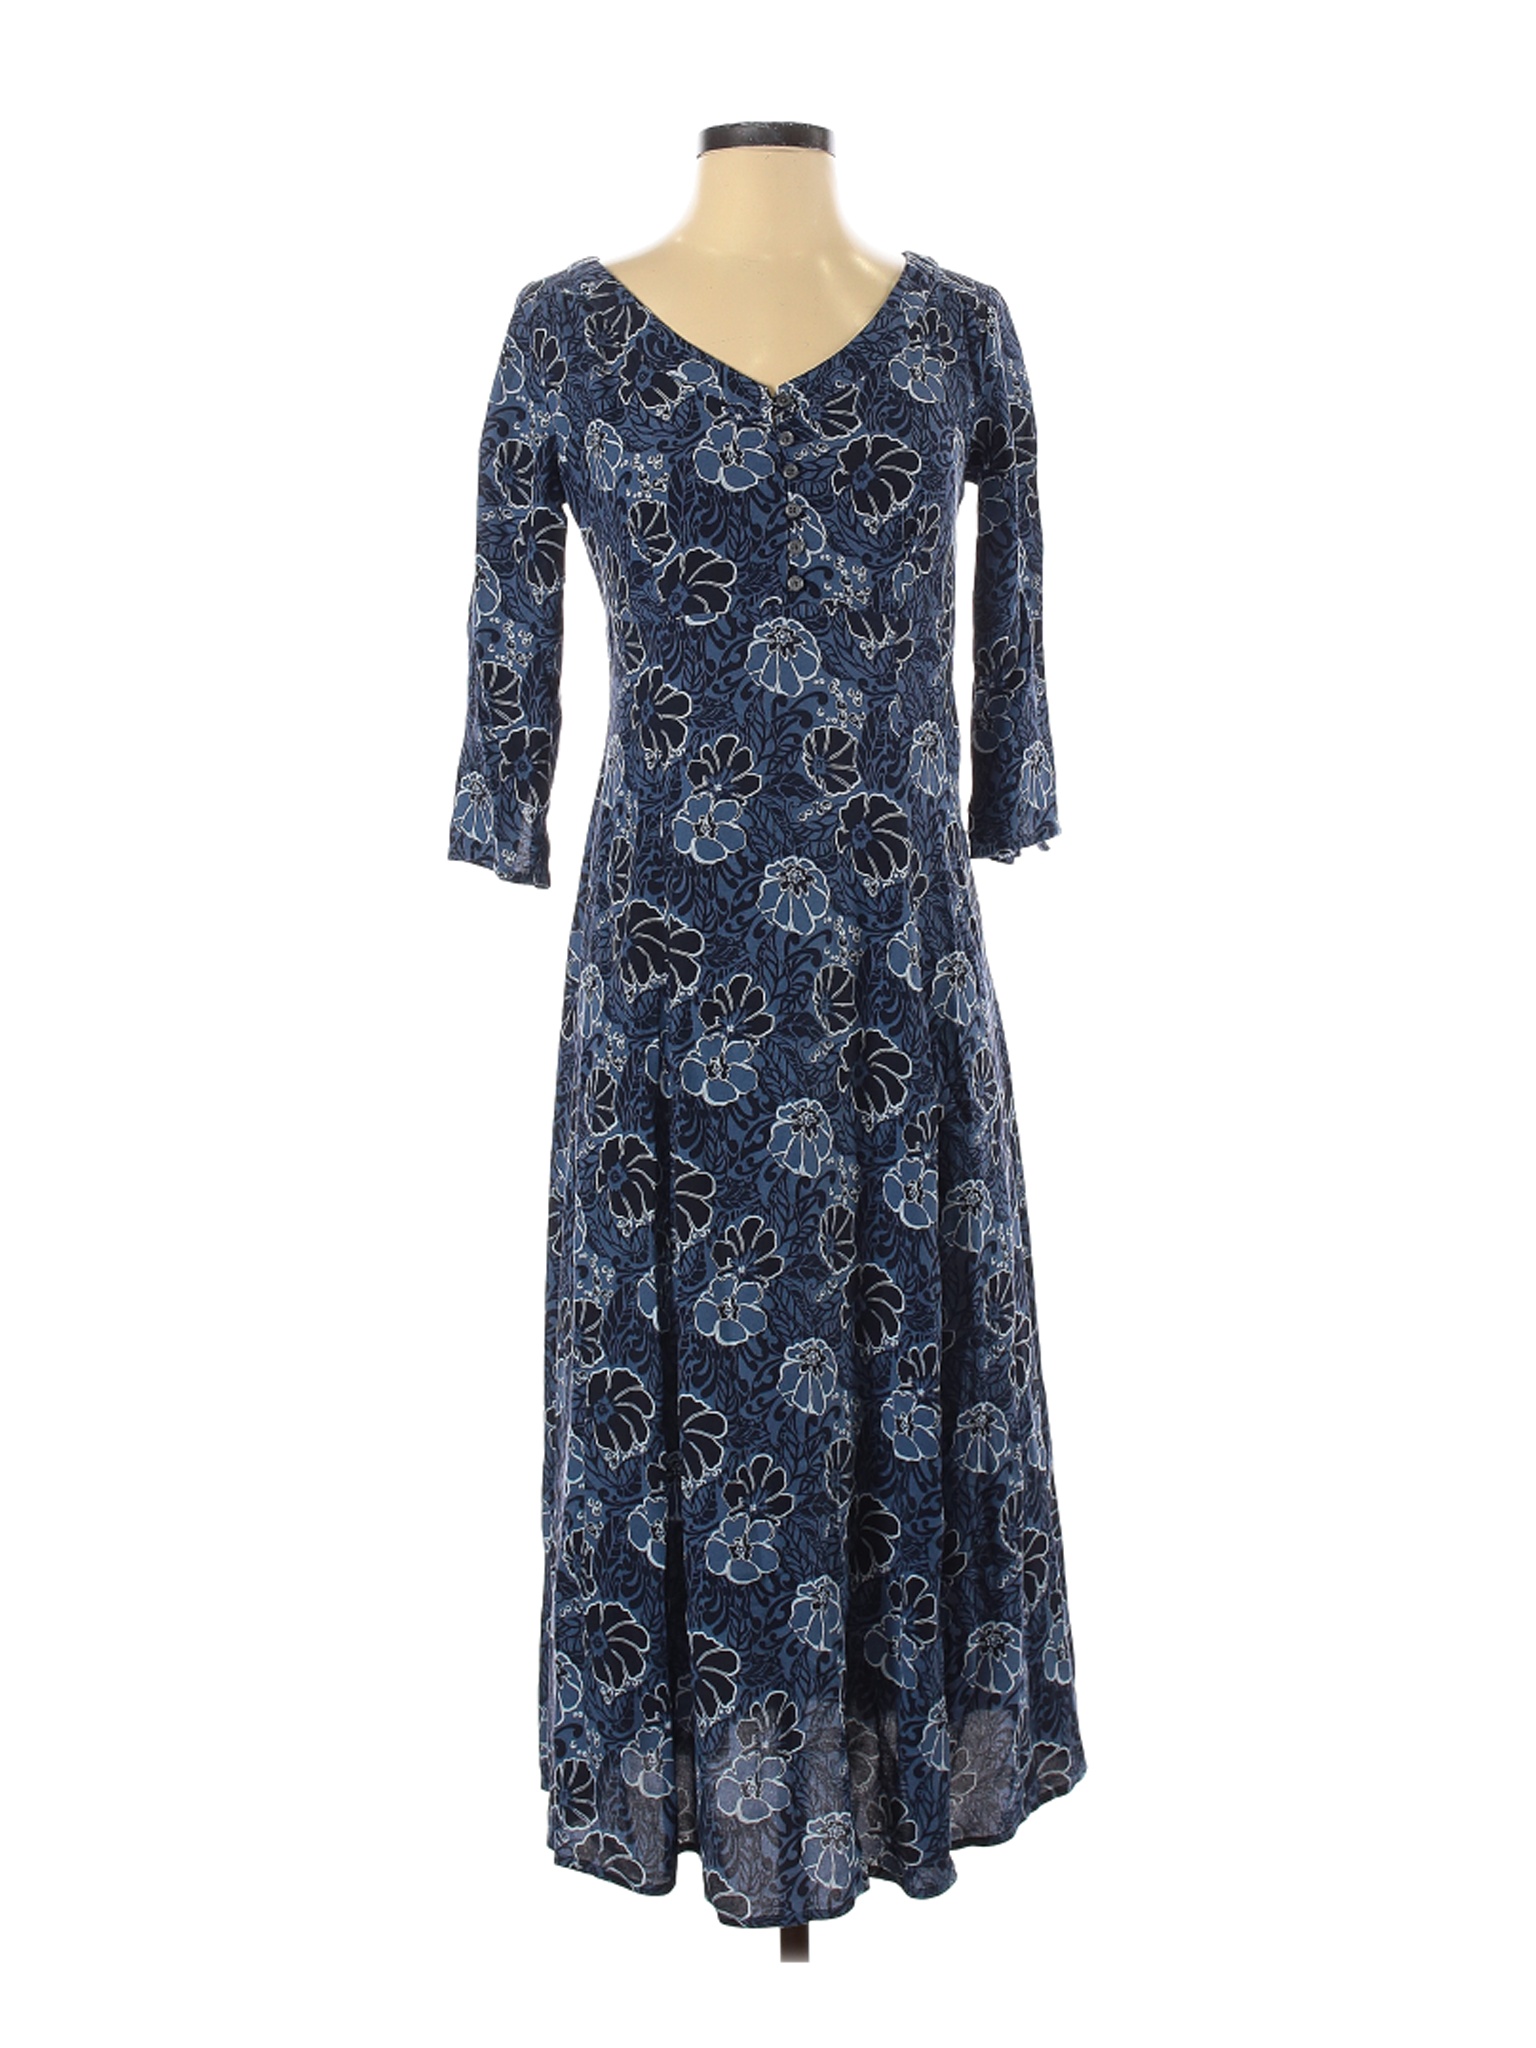 Eddie Bauer Women Blue Casual Dress XS | eBay